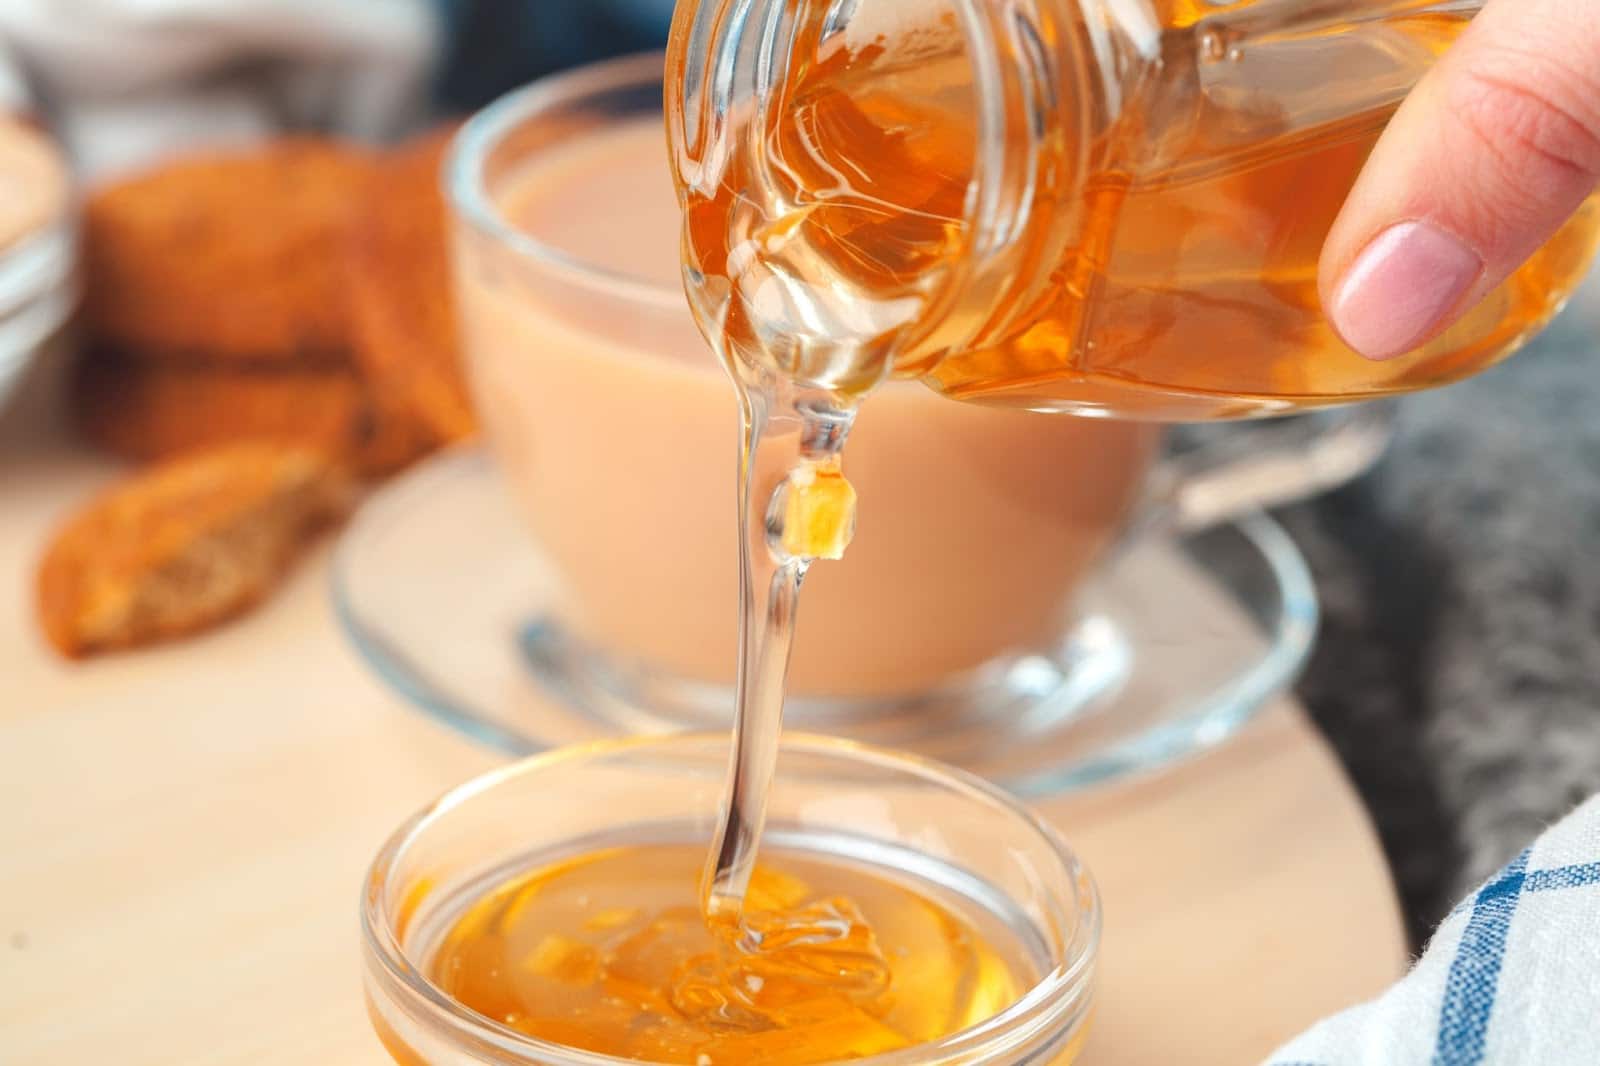 How to Make Herbal Teas: 5 Best Herbal Tea Recipes